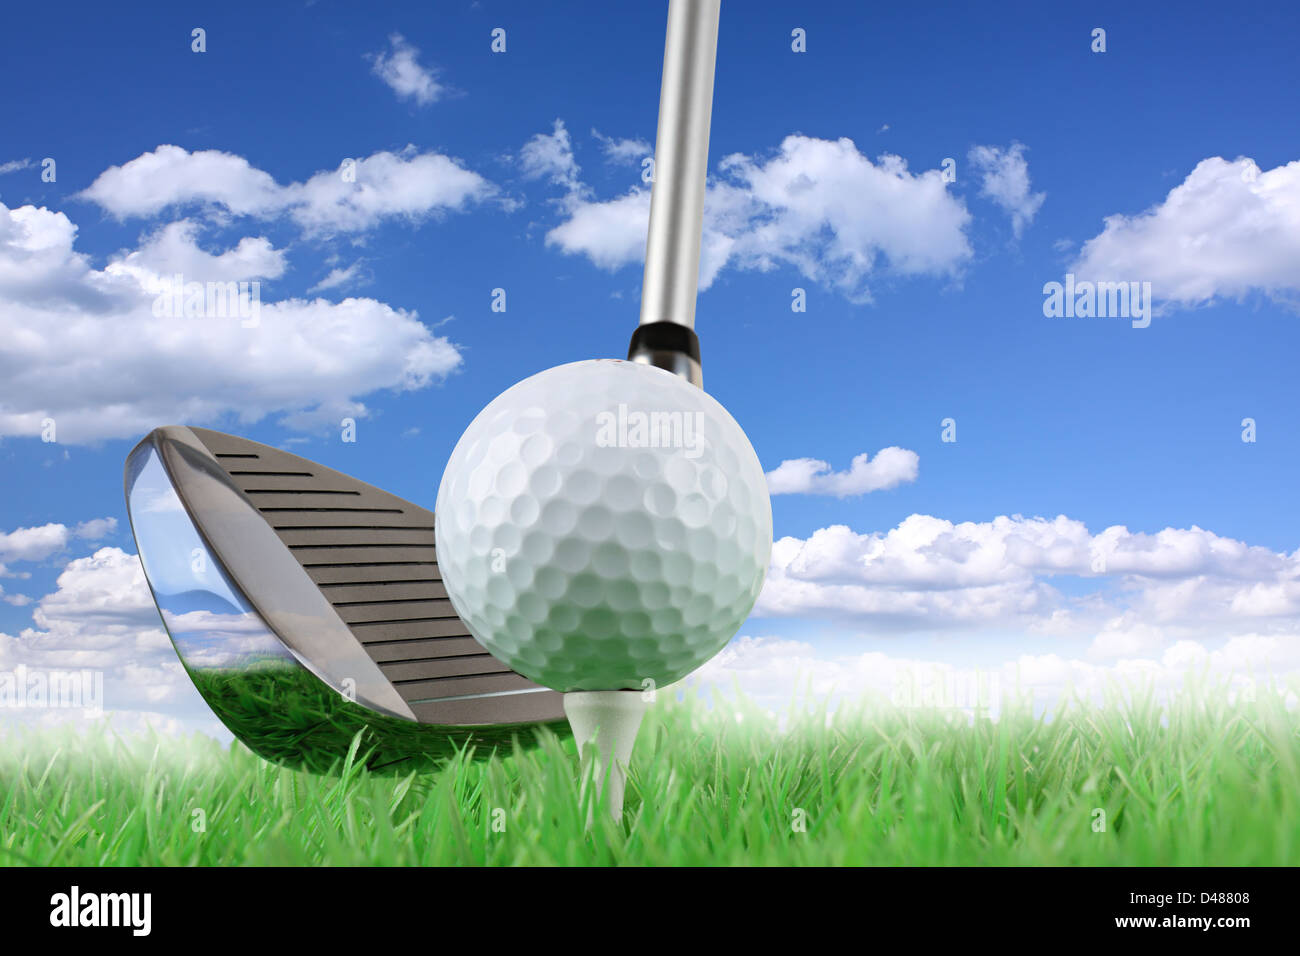 Club de golf con bola y tee de verde delante de azul cielo nublado Foto de stock